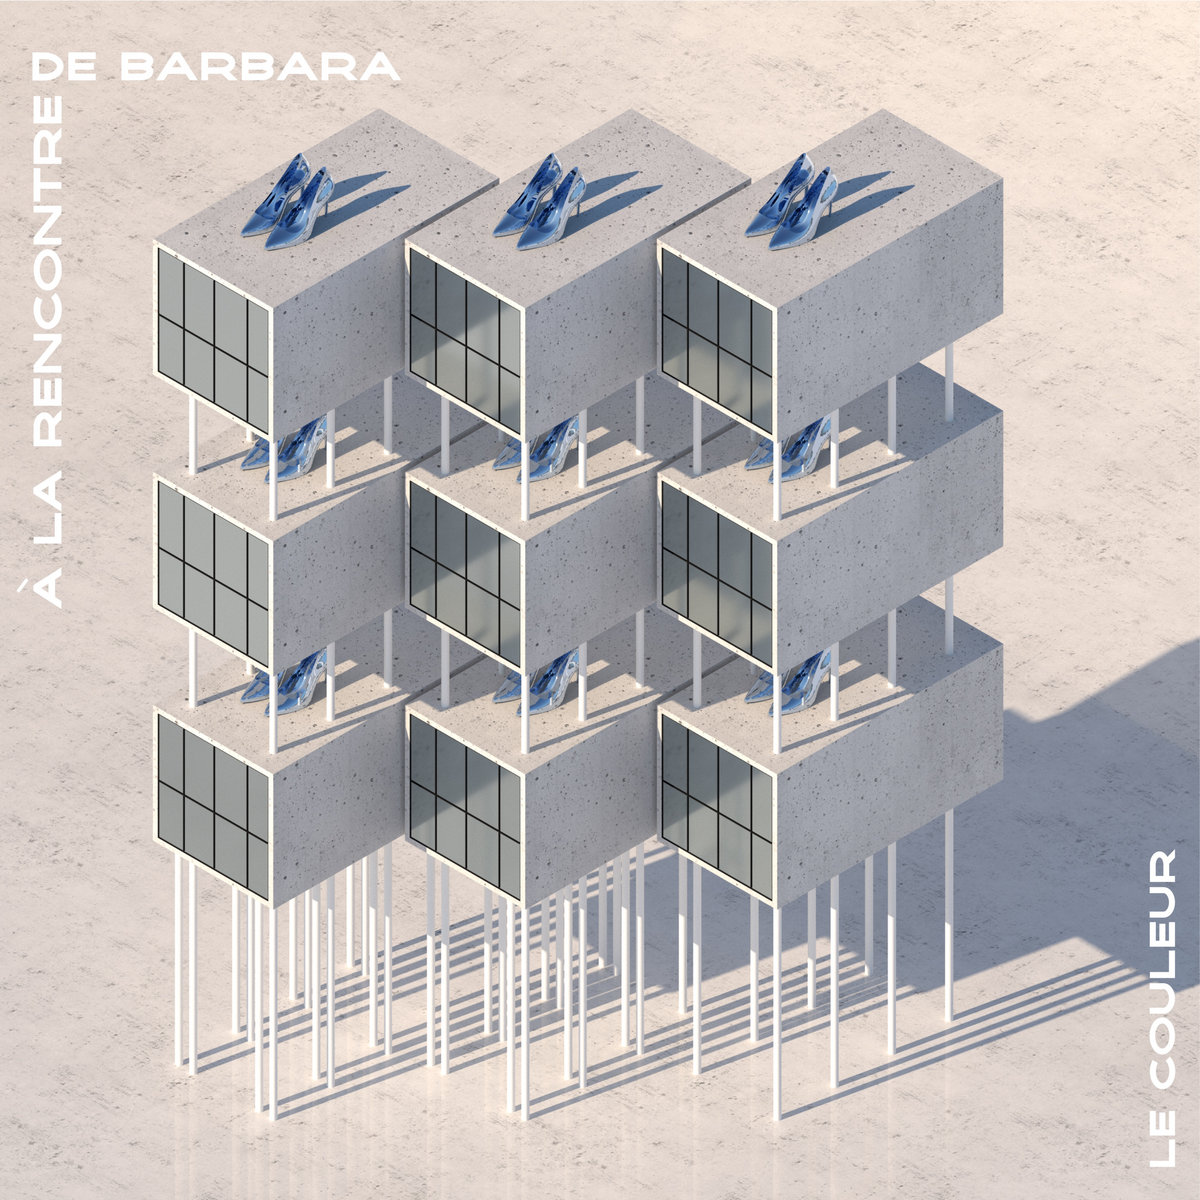 Le Couleur featuring Standard Emmanuel — À la rencontre de Barbara cover artwork